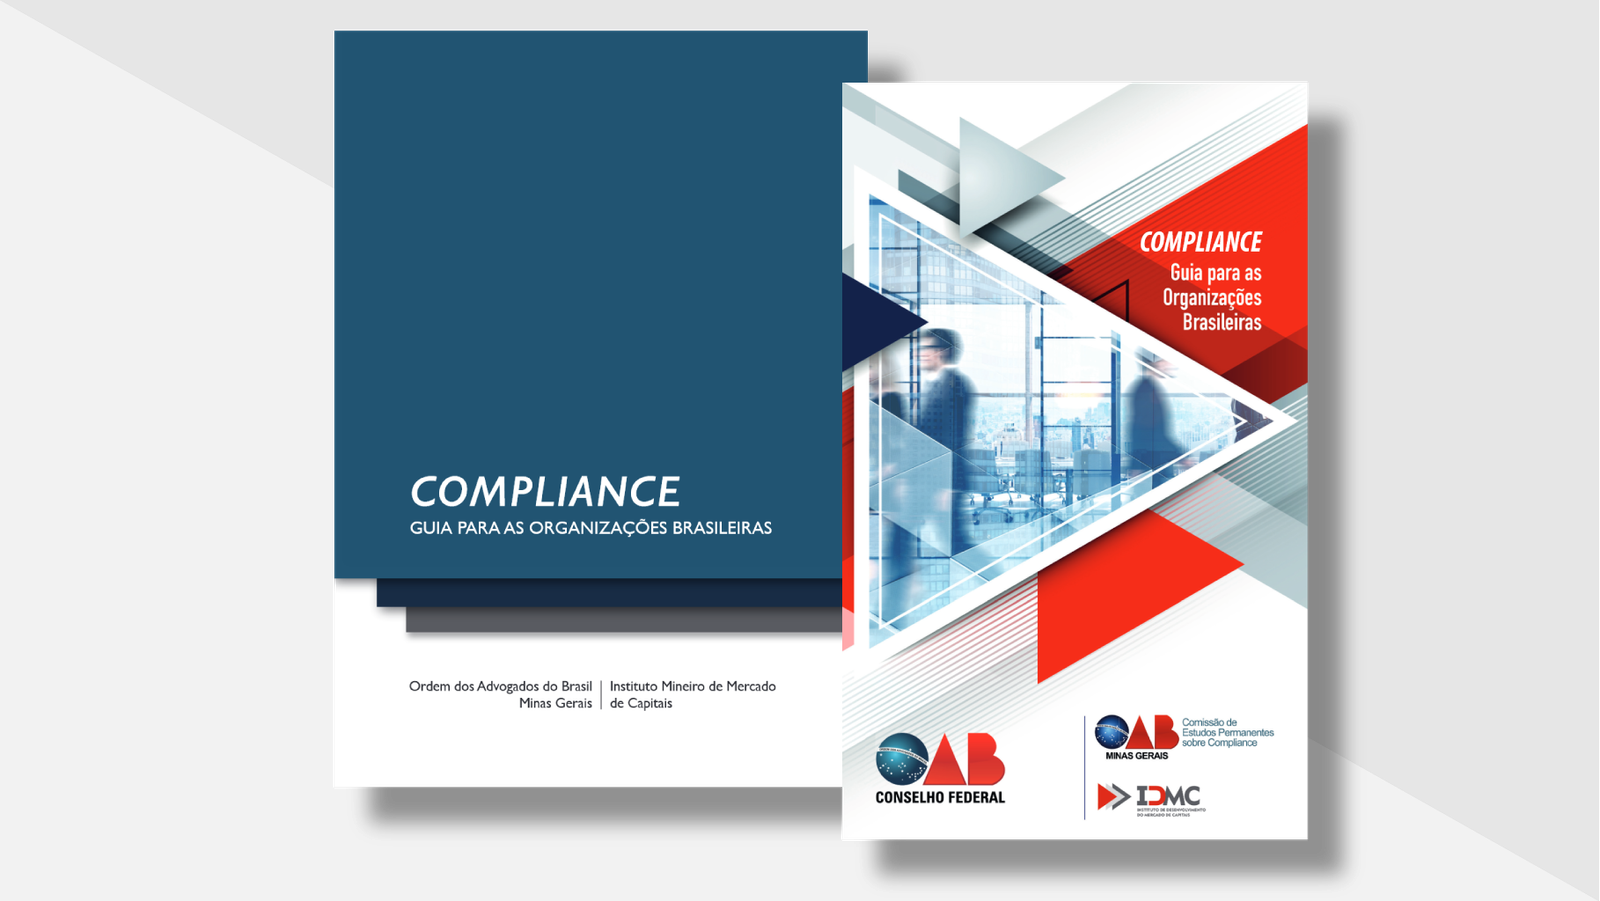 Cartilha “Compliance: Guia para Organizações Brasileiras” (2016 e 2018)